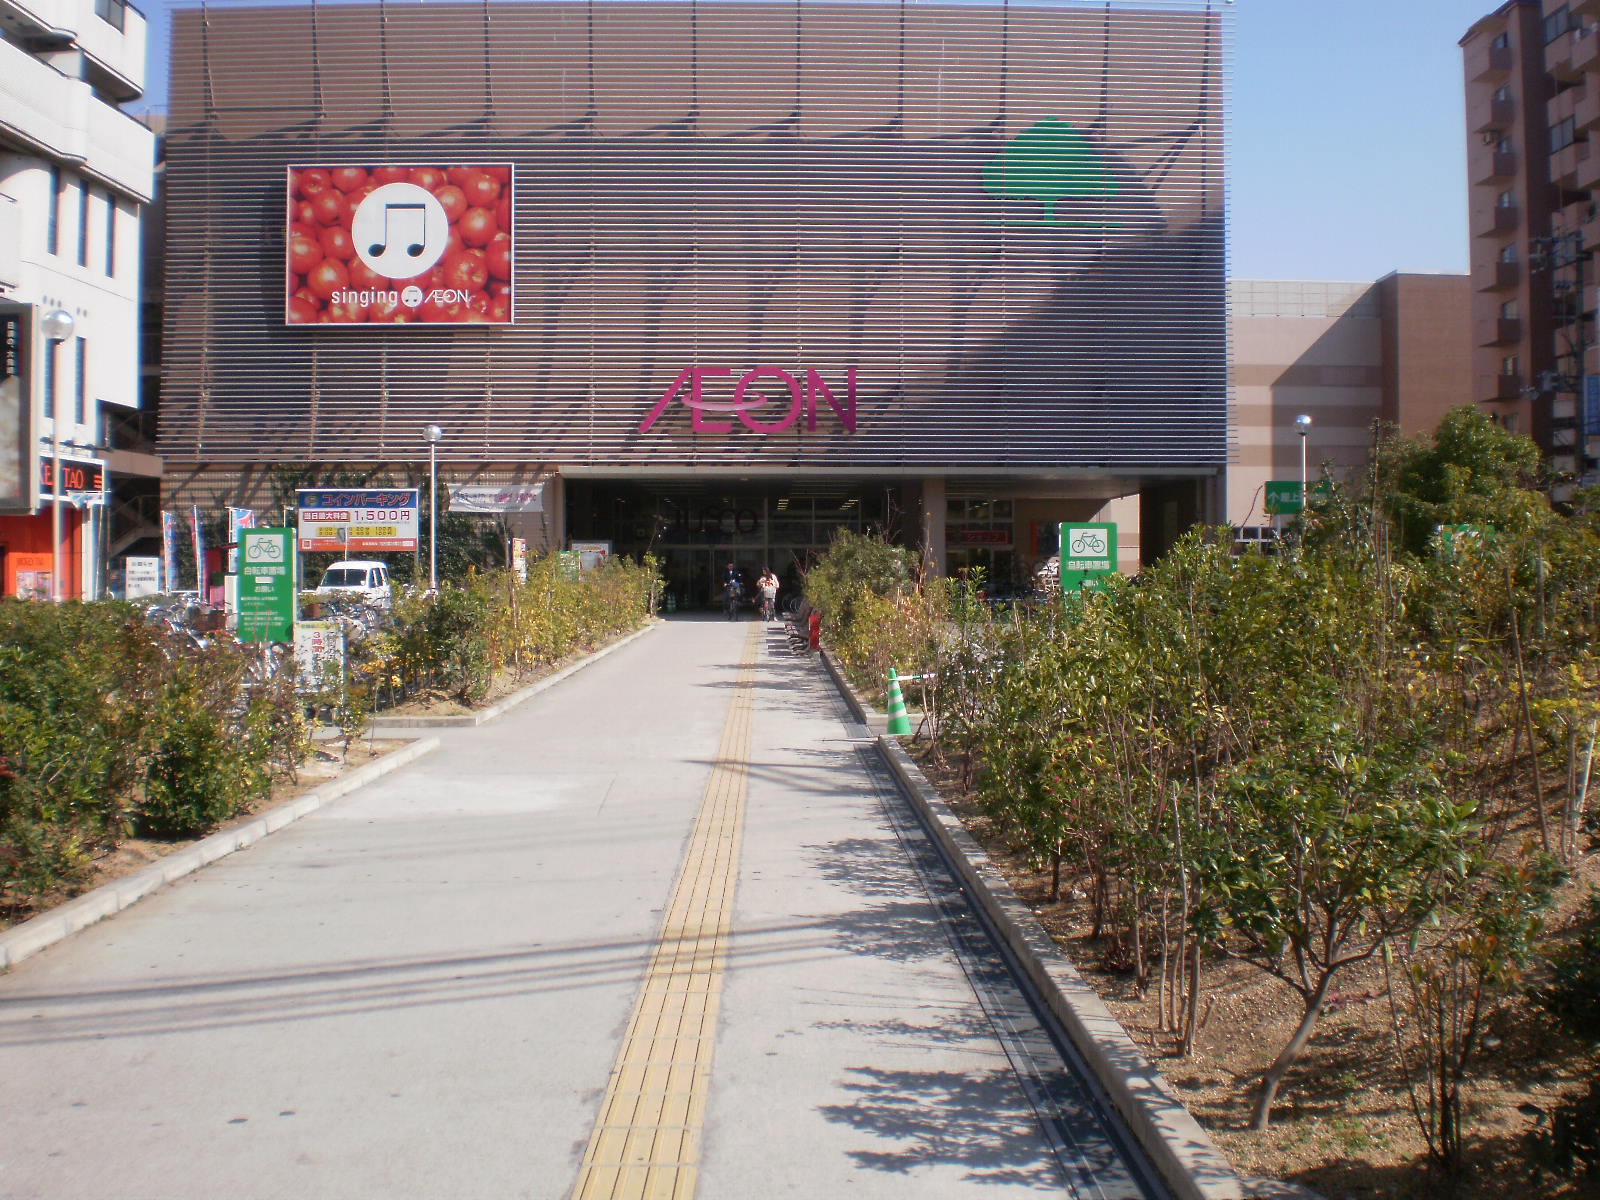 Shopping centre. 607m until ion Kireuriwari shopping center (shopping center)